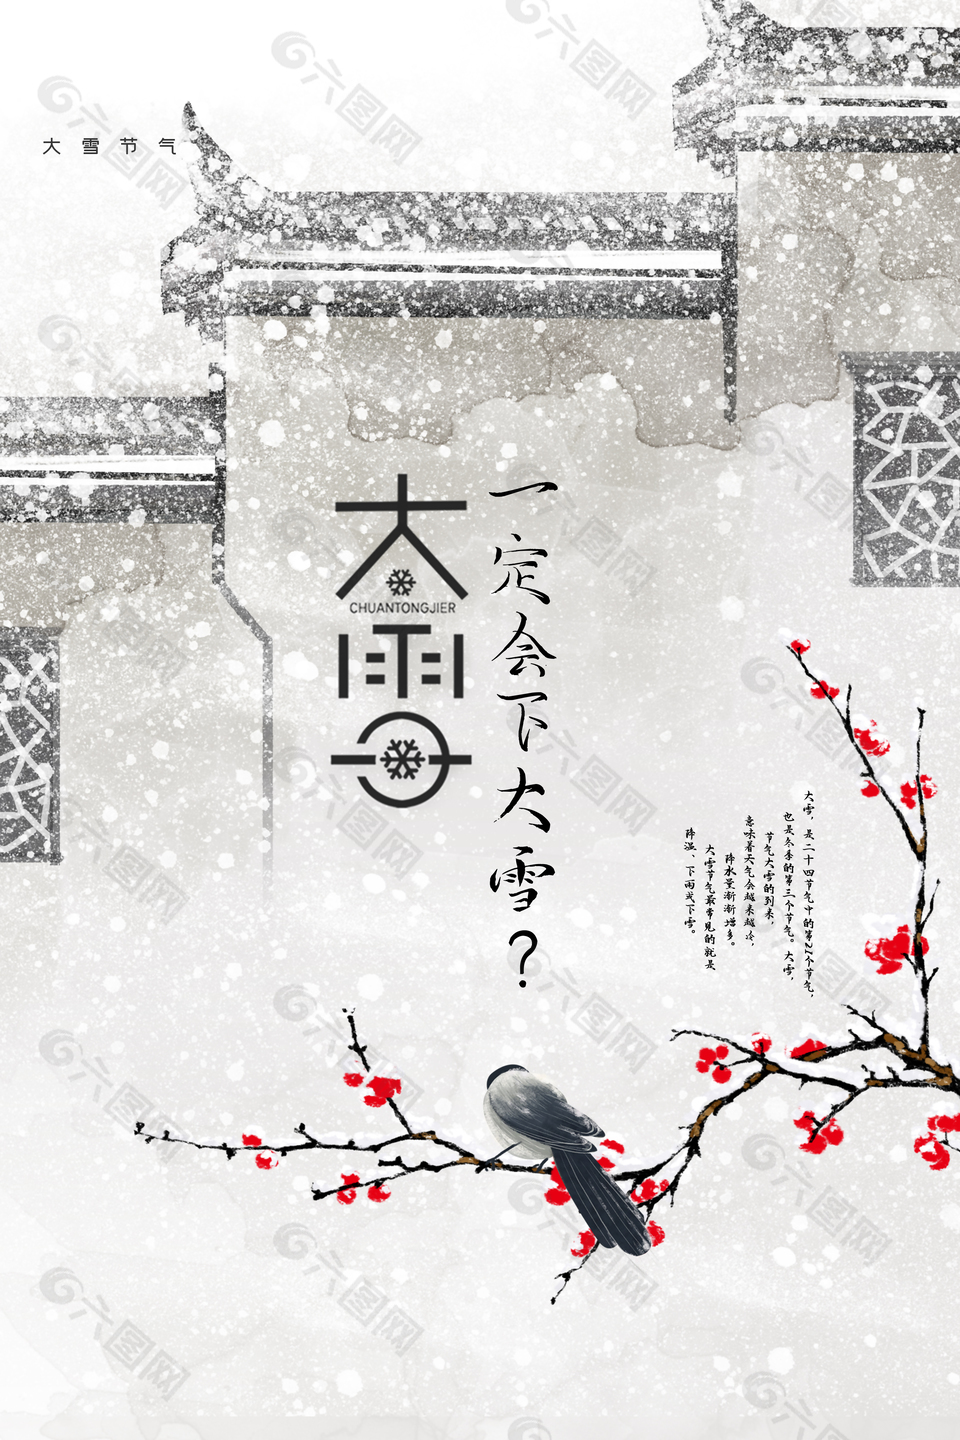 大雪时节古风建筑红梅海报